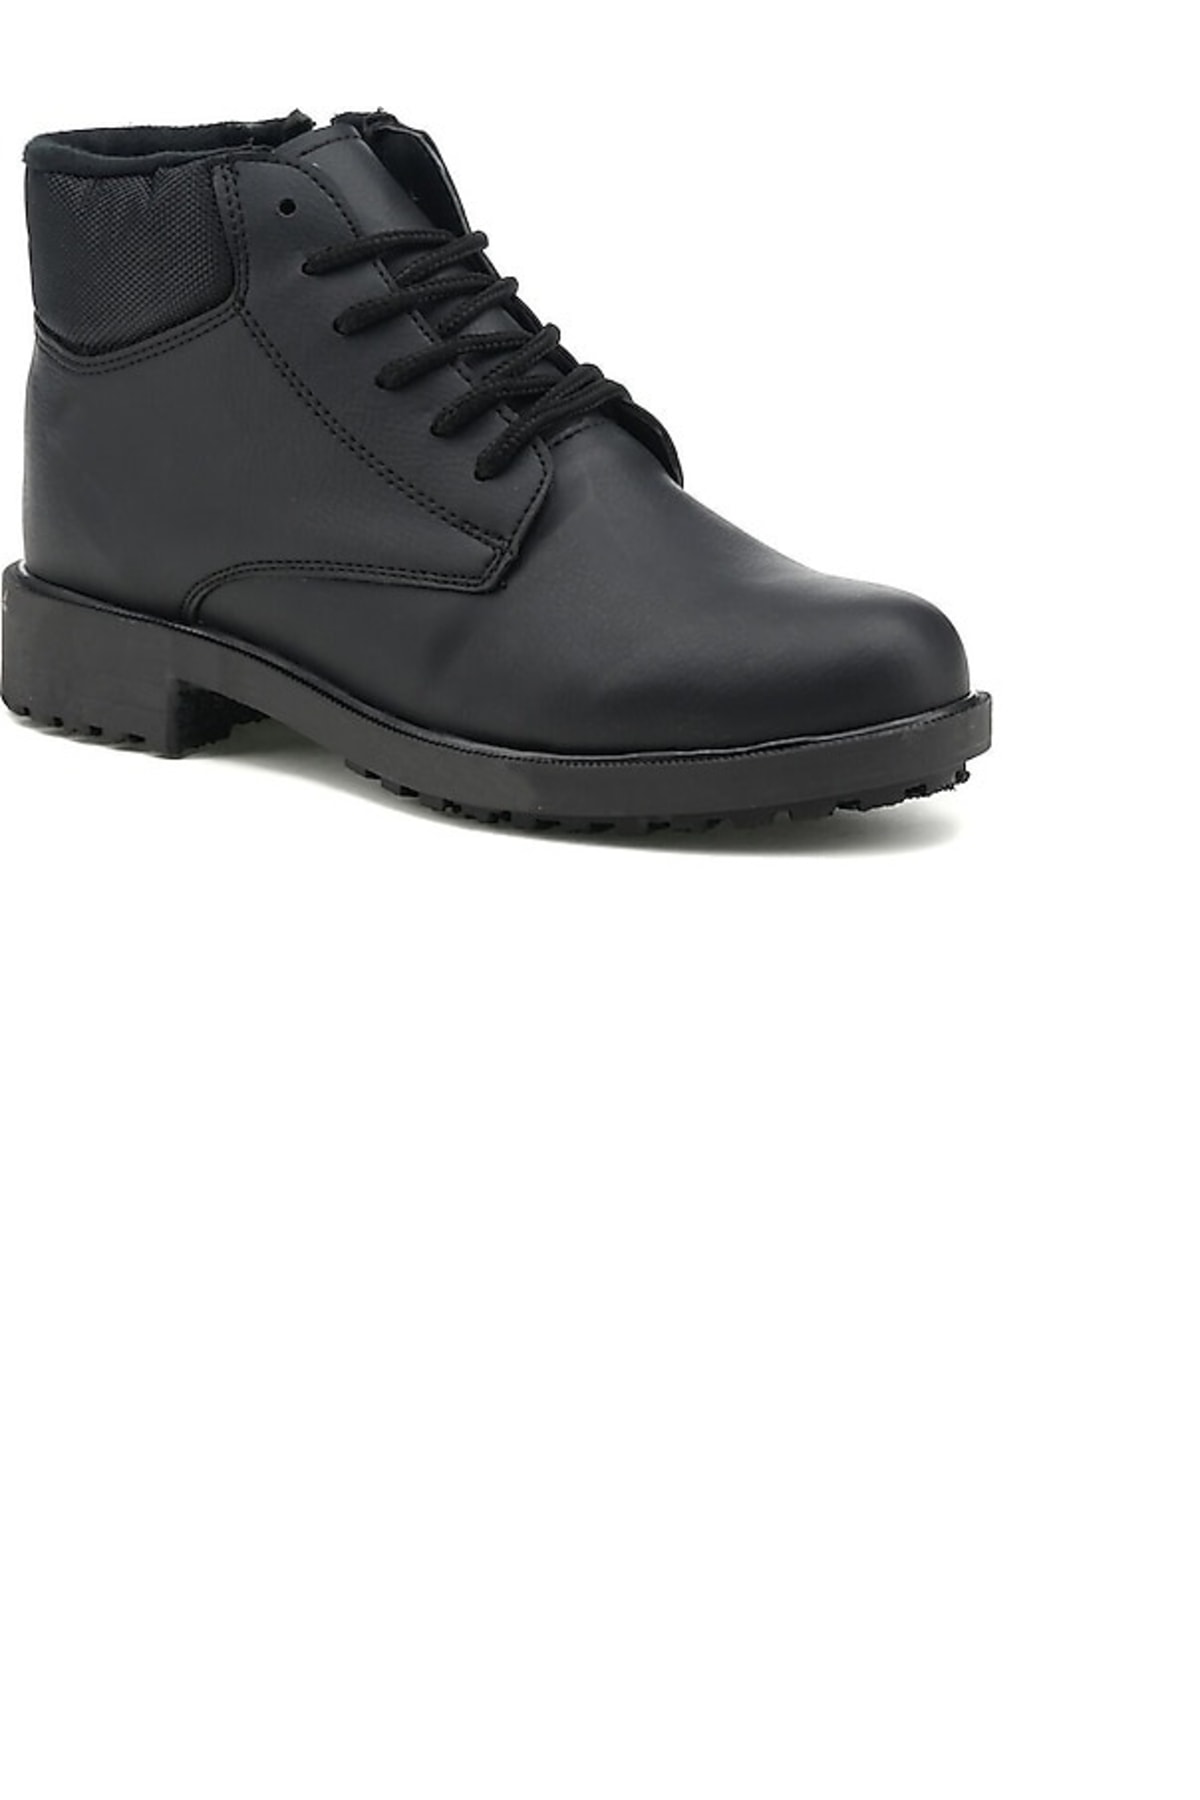 Polaris 150507.m2pr Black Men's Casual Boots